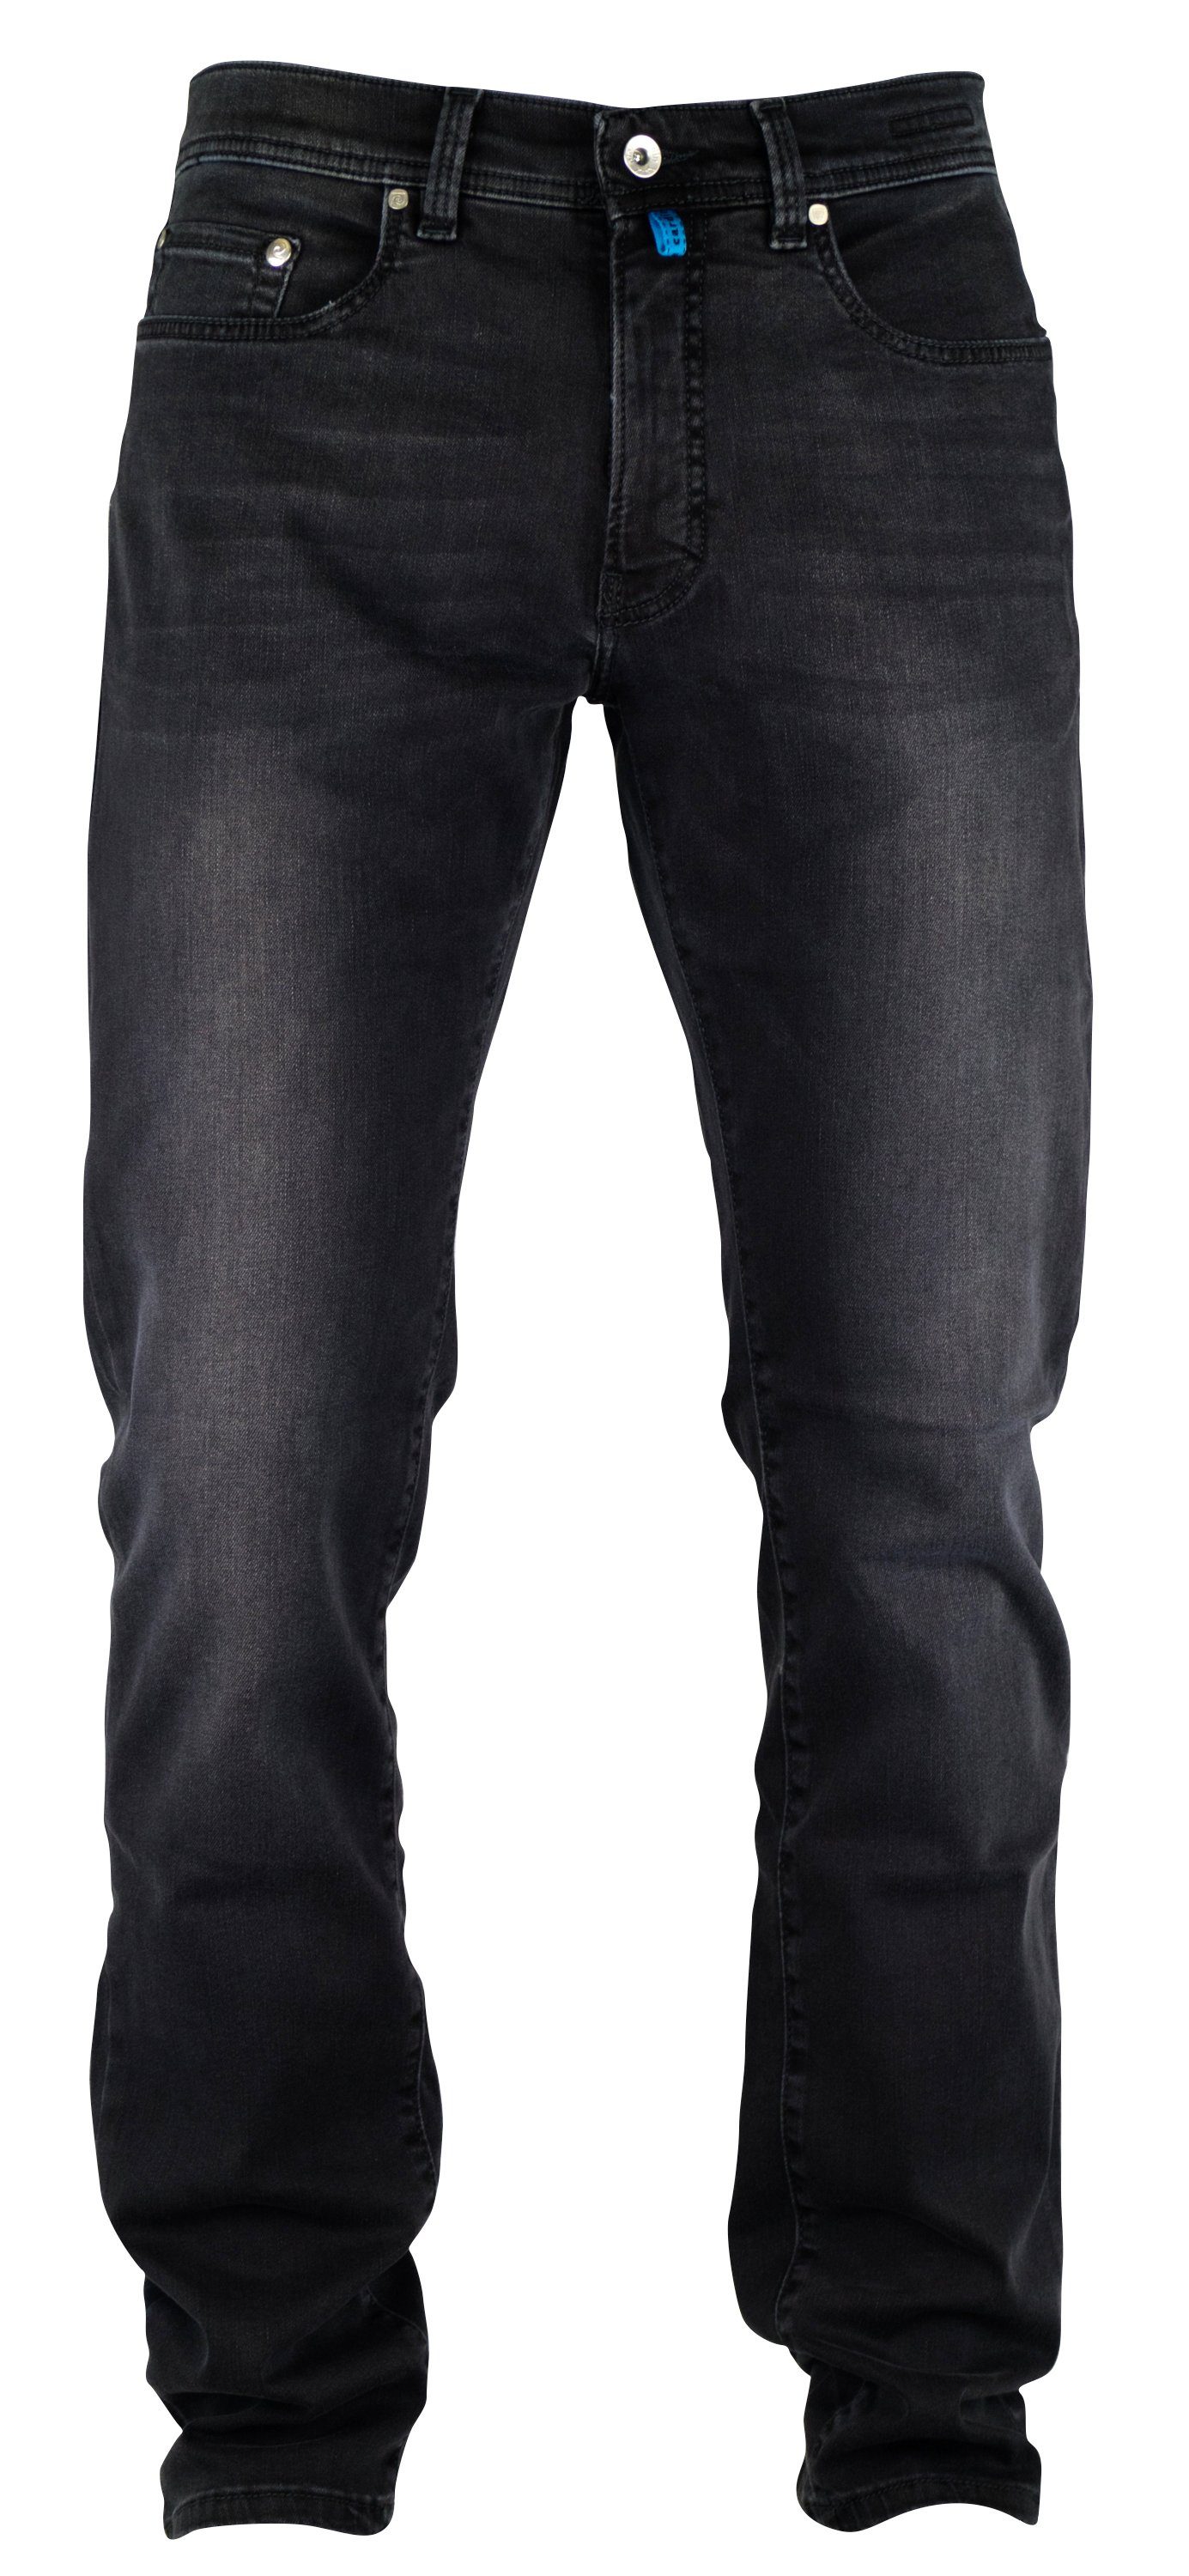 Pierre Cardin 5-Pocket-Jeans PIERRE CARDIN FUTUREFLEX LYON grey sun vintage used washed 3451 8880.0